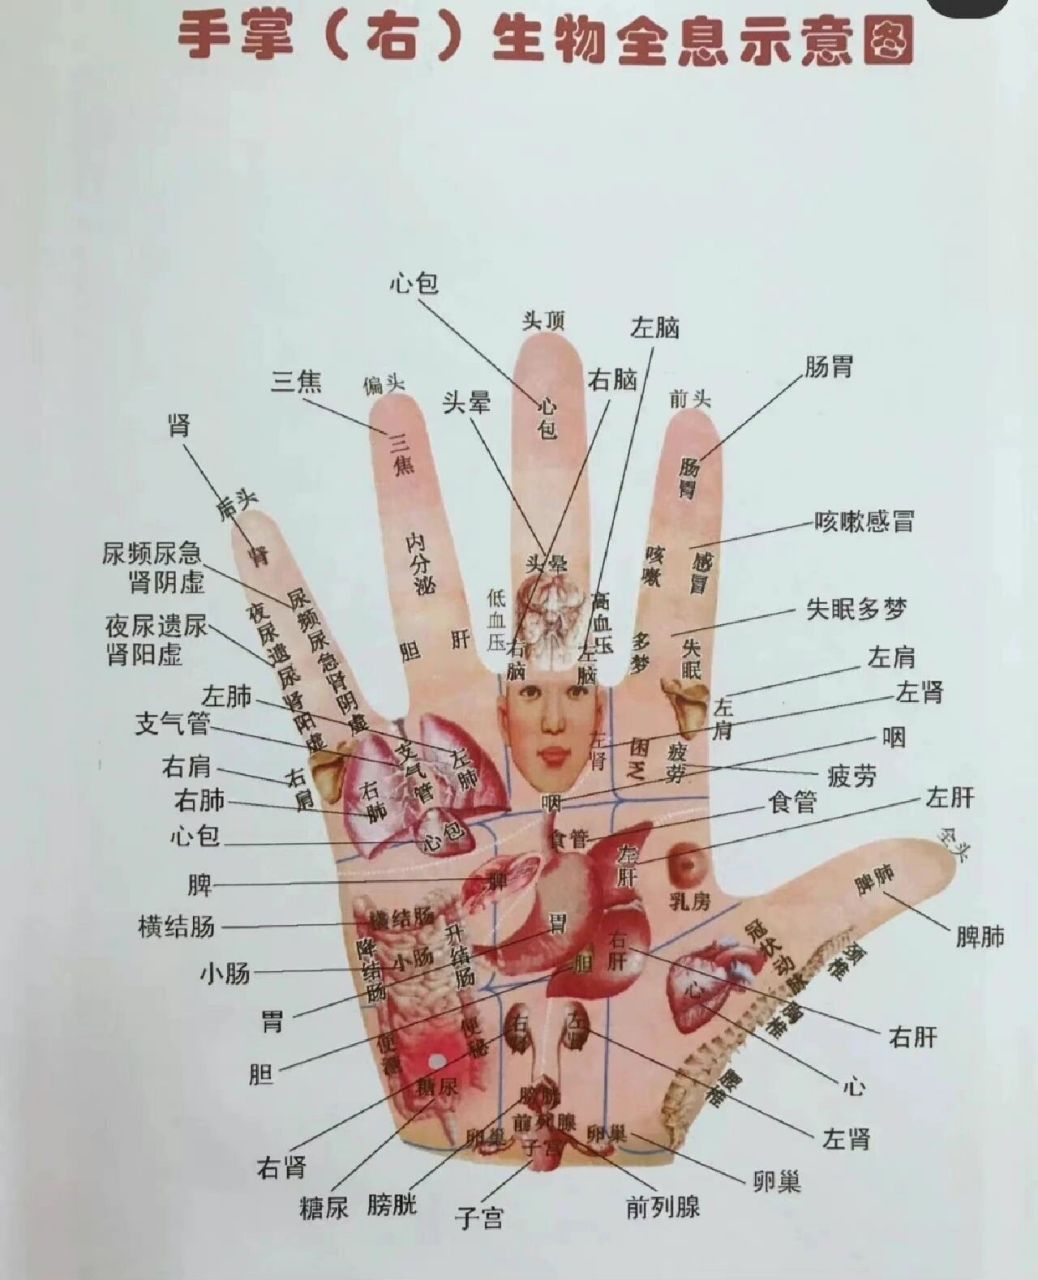 神奇的掌骨全息诊疗法图片